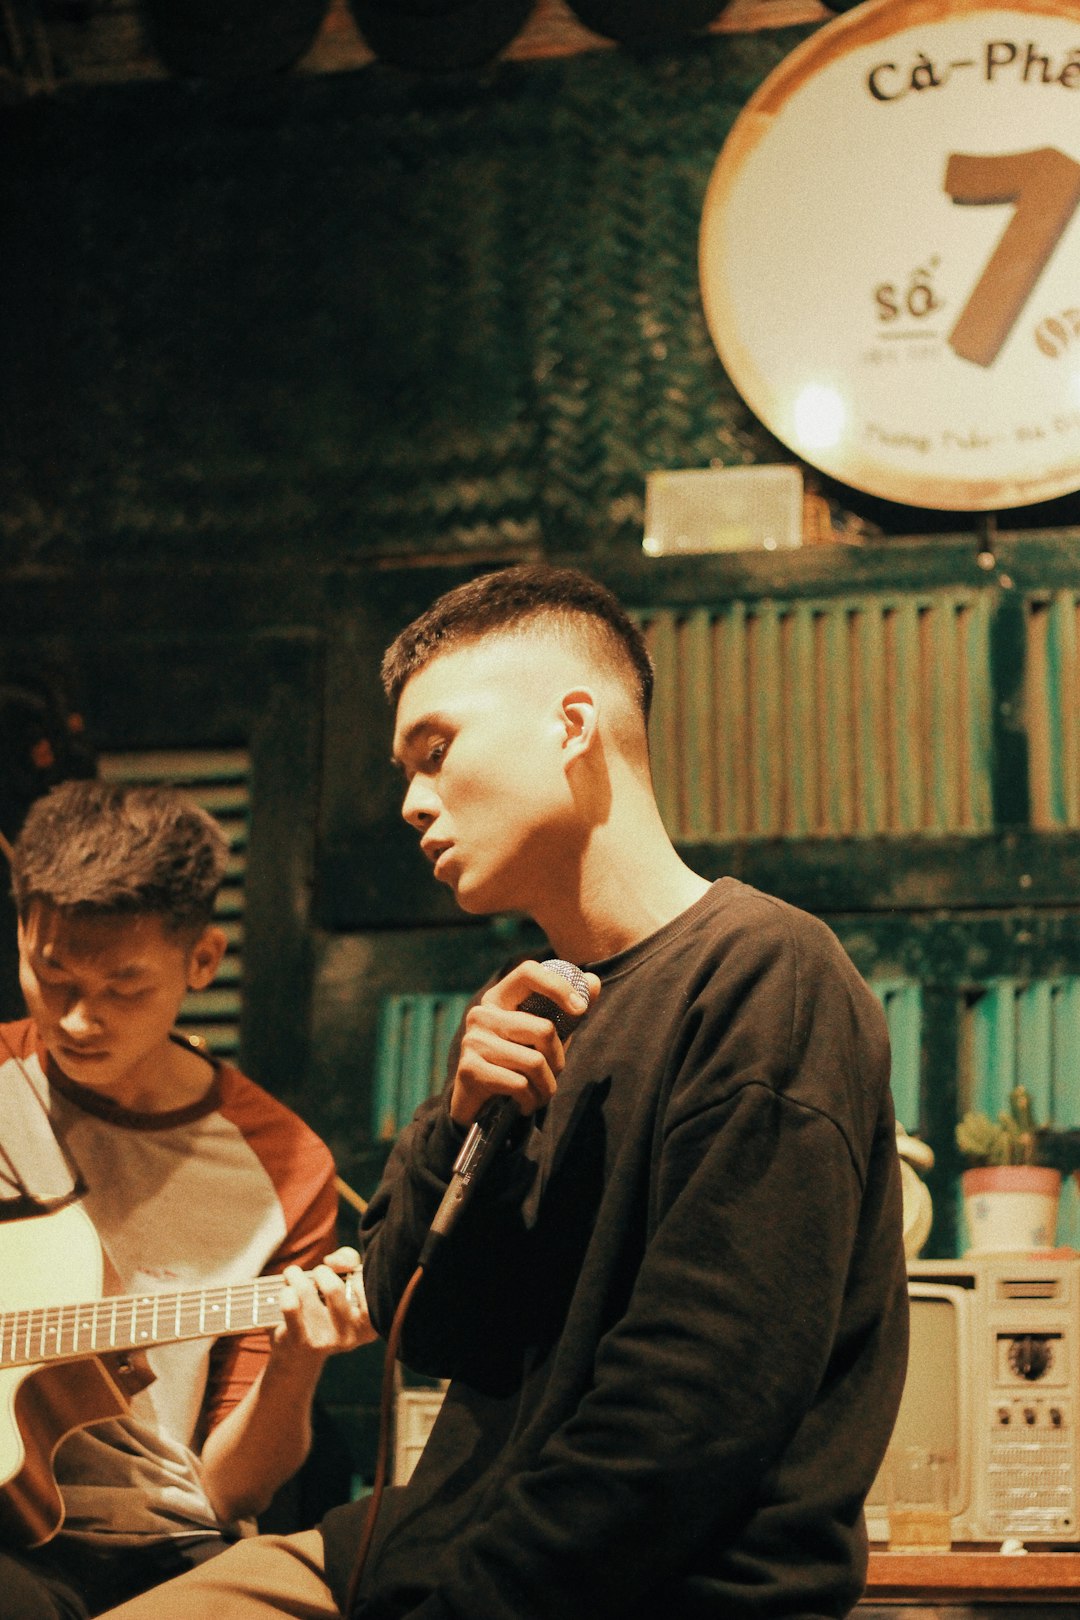 man wearing black crew-neck shirt holding microphone beside man playing guitar